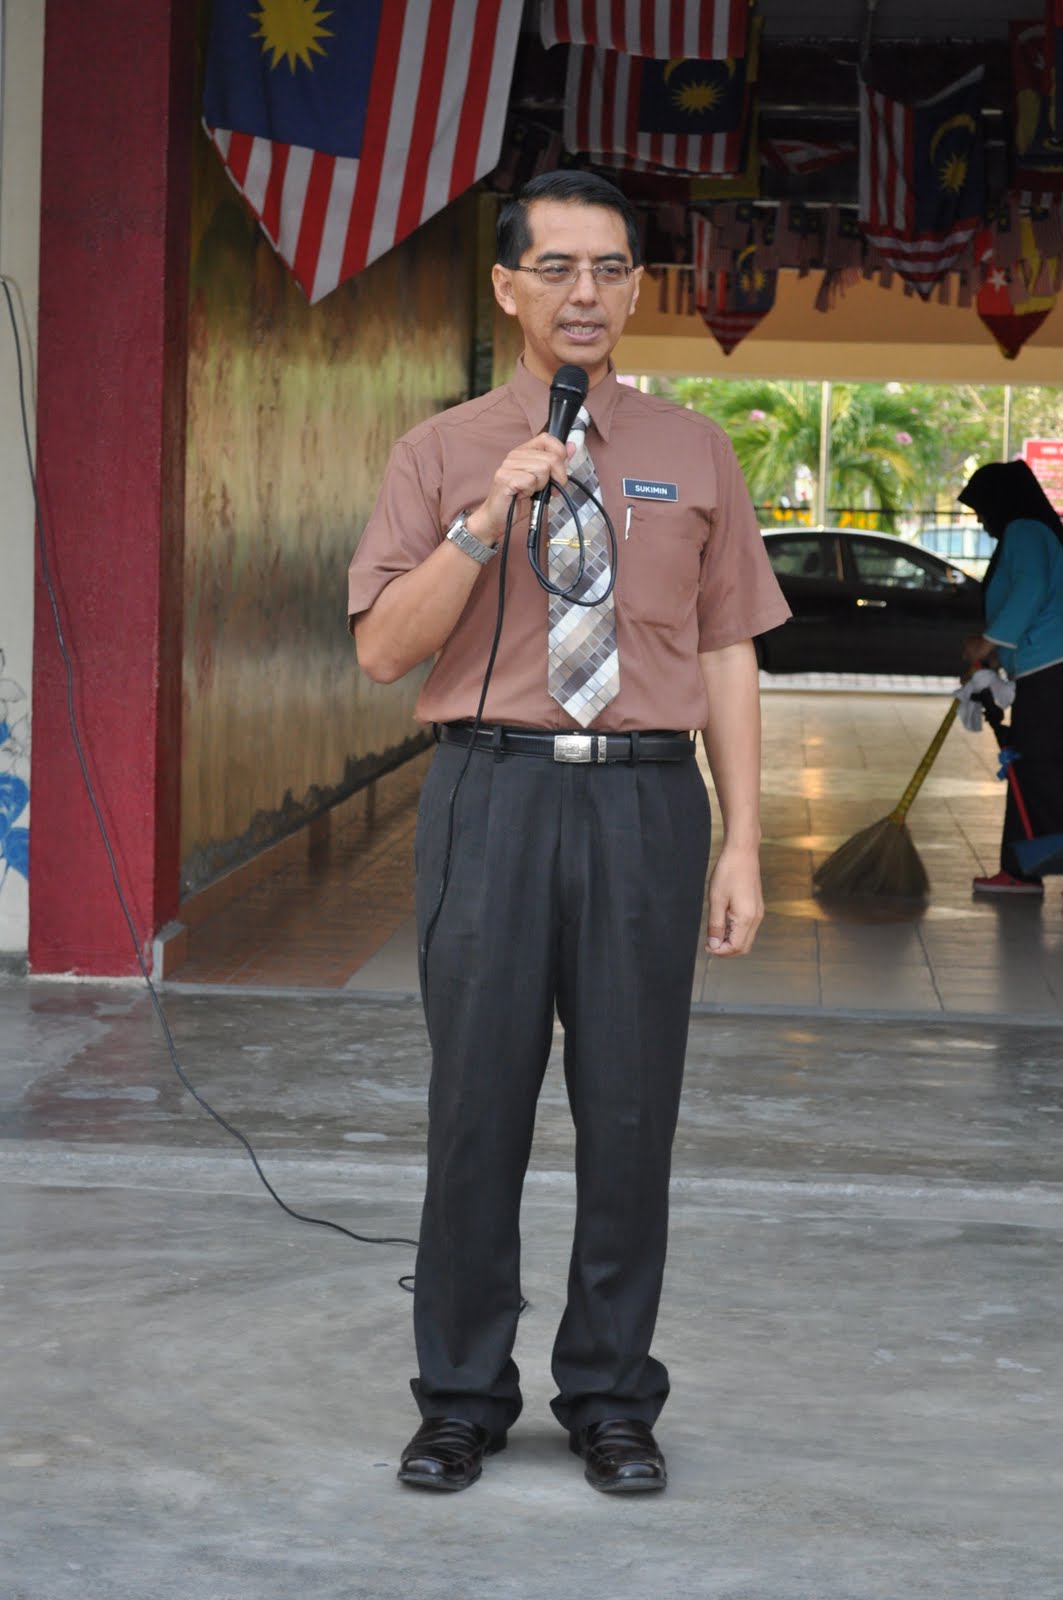 Sekolah Kebangsaan Taman Putra Perdana: Pelancaran Program 